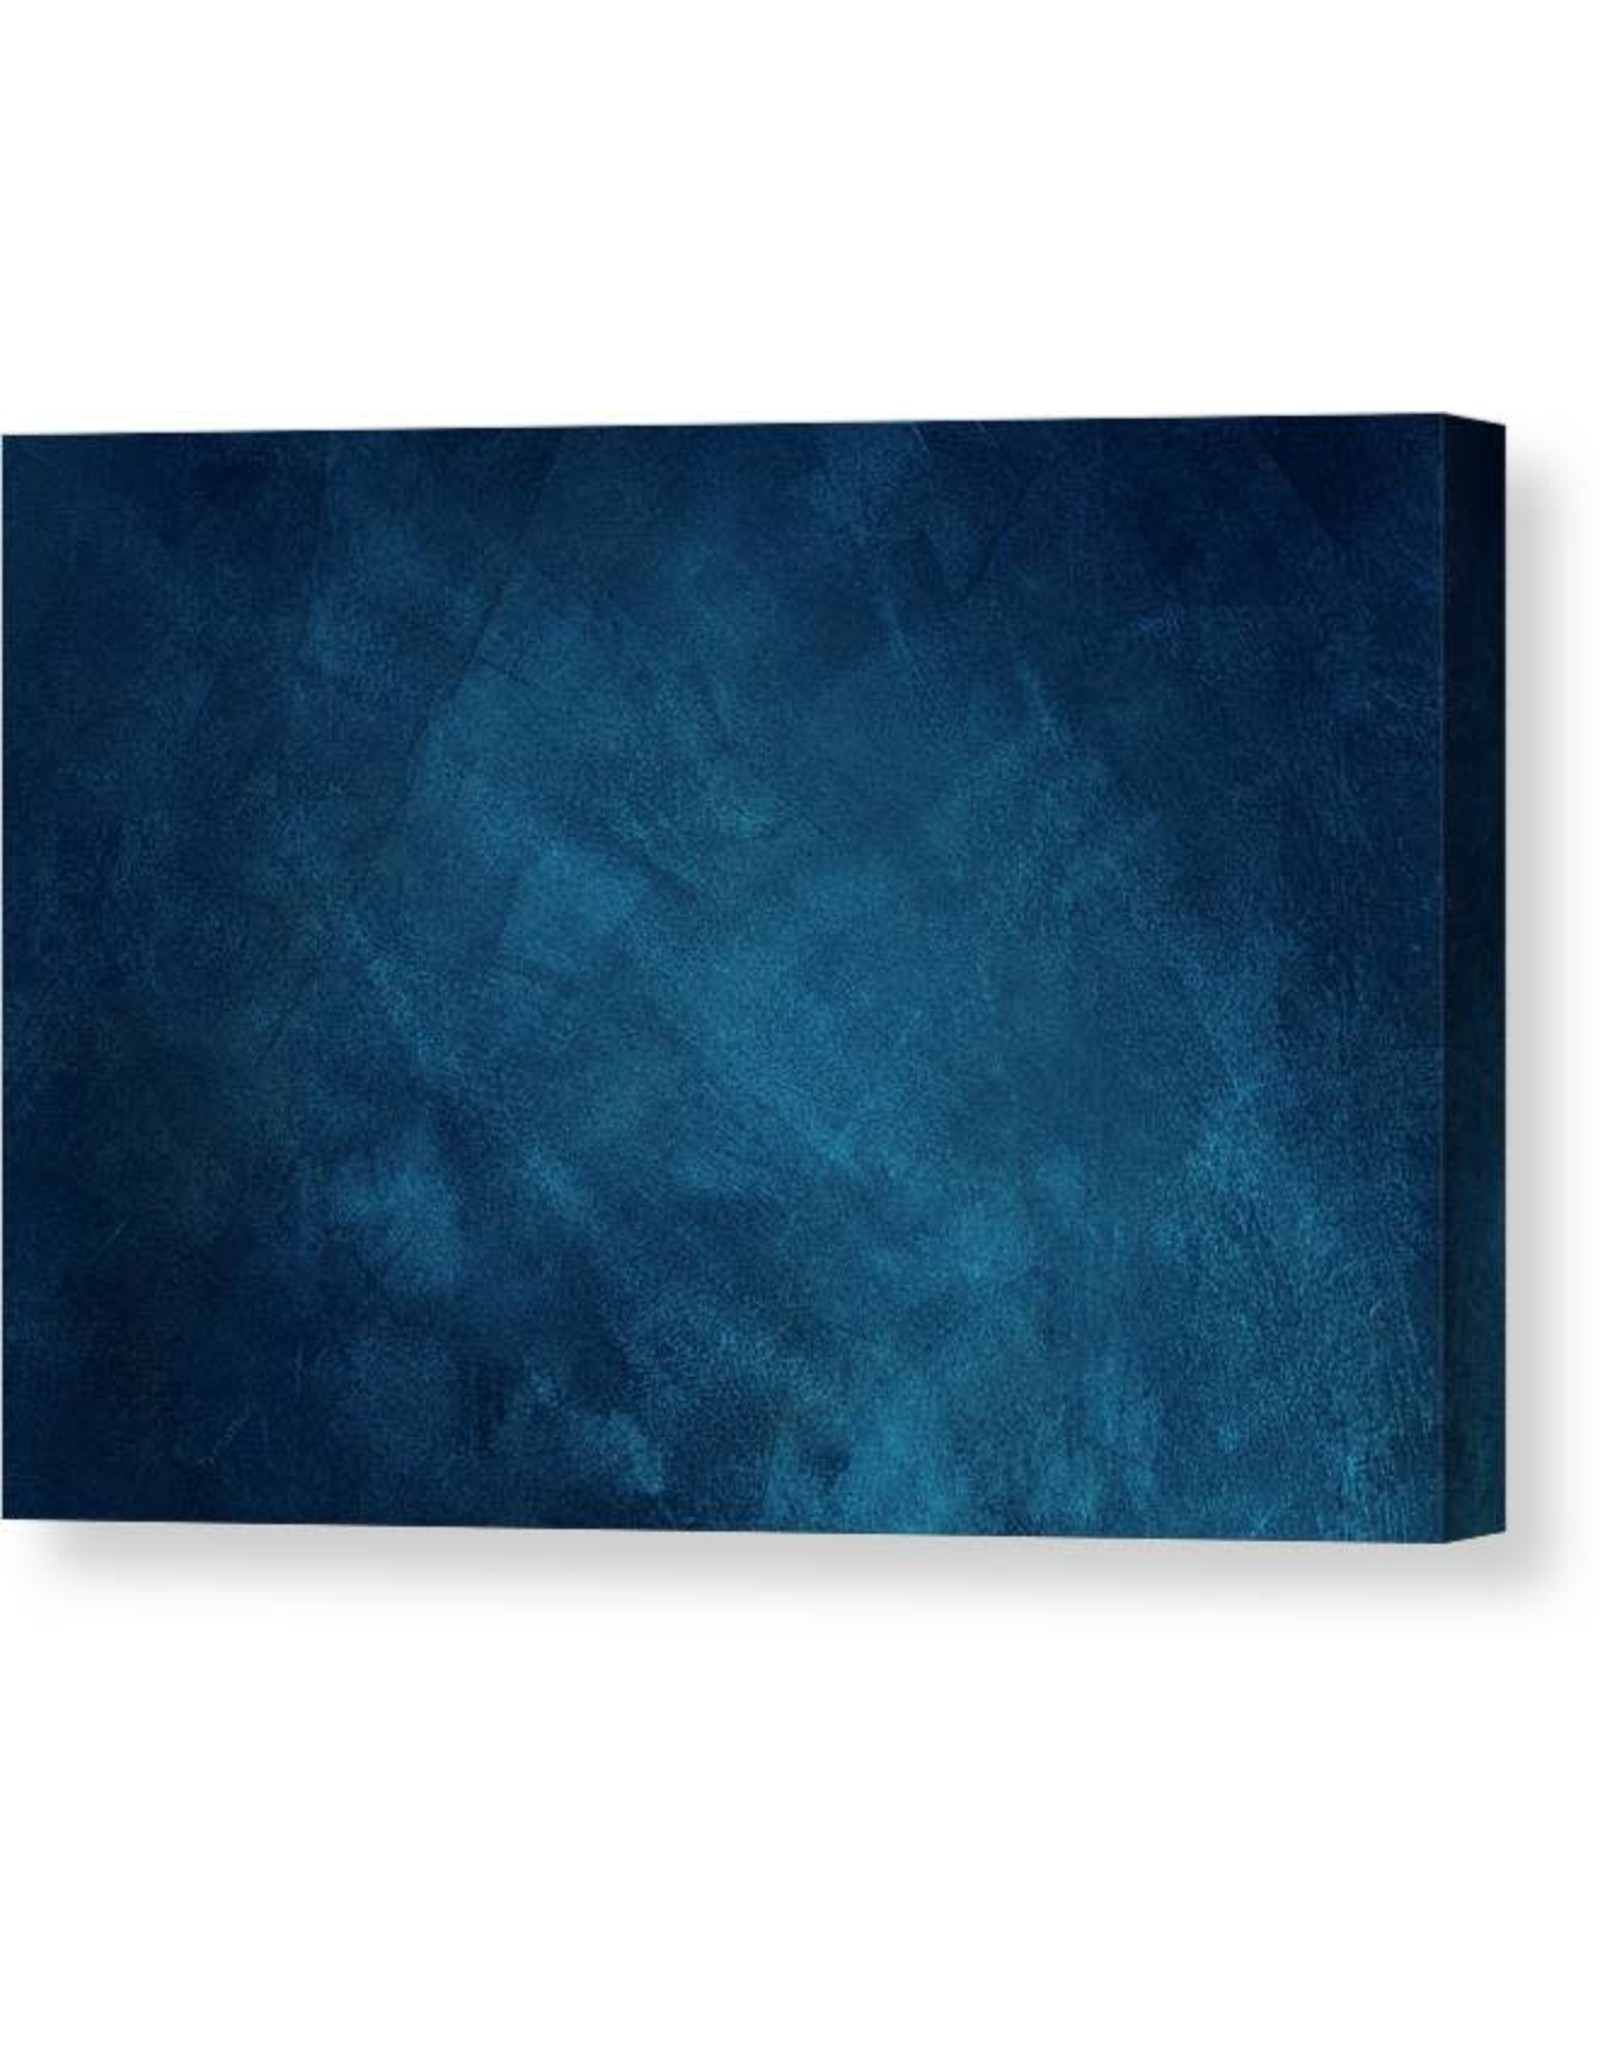 Denny Denny canvas backgrounds  7 x8 FT  Blue /Black - OM8450